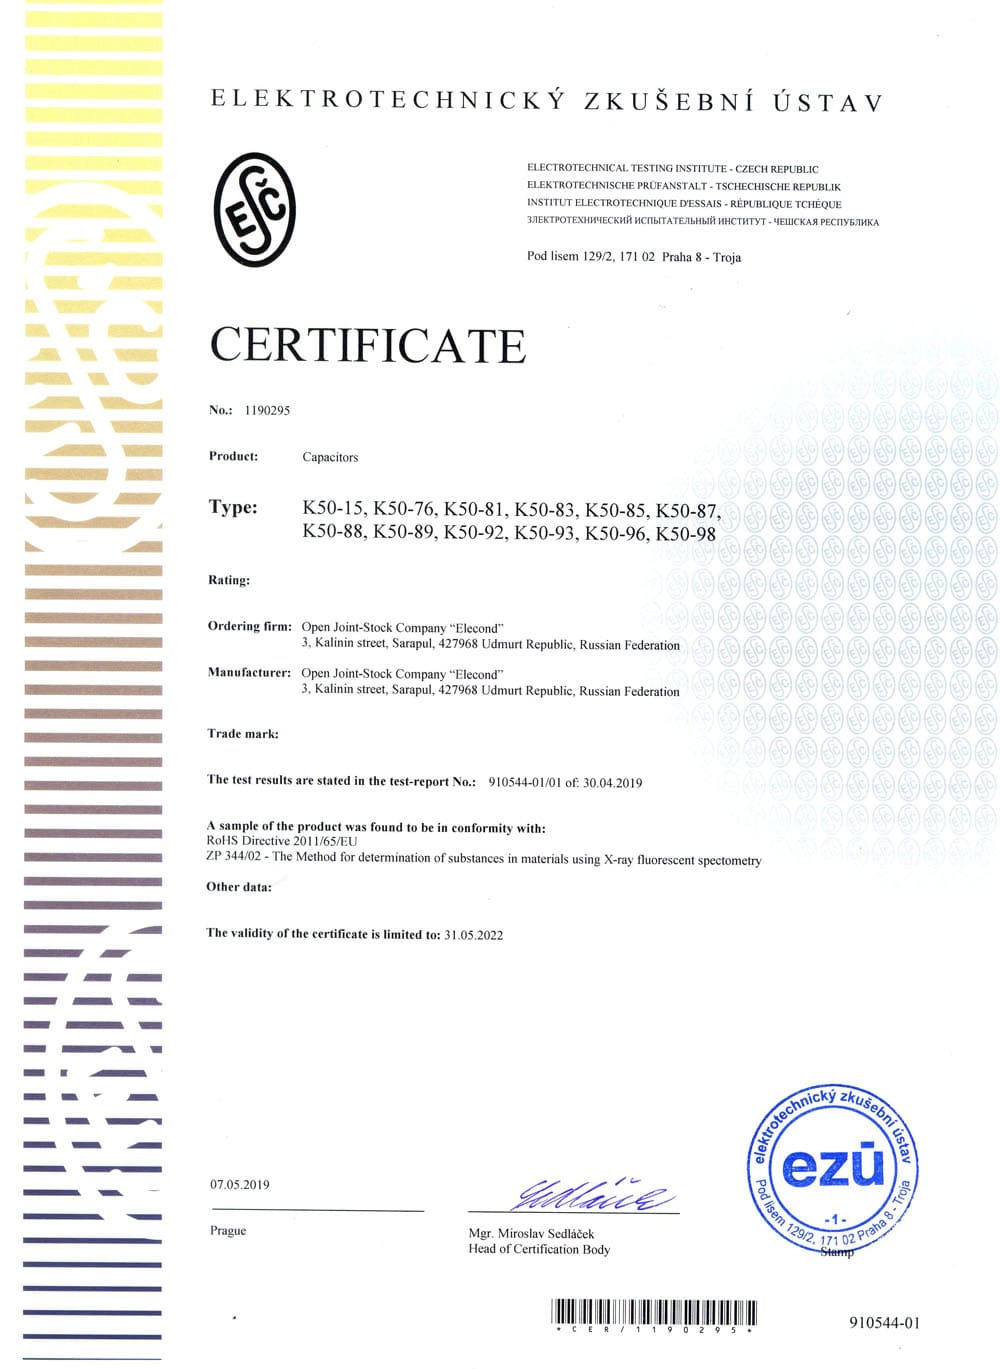 Сертификат соответствия директиве ROHS 2011/65/EU конденсаторов К50